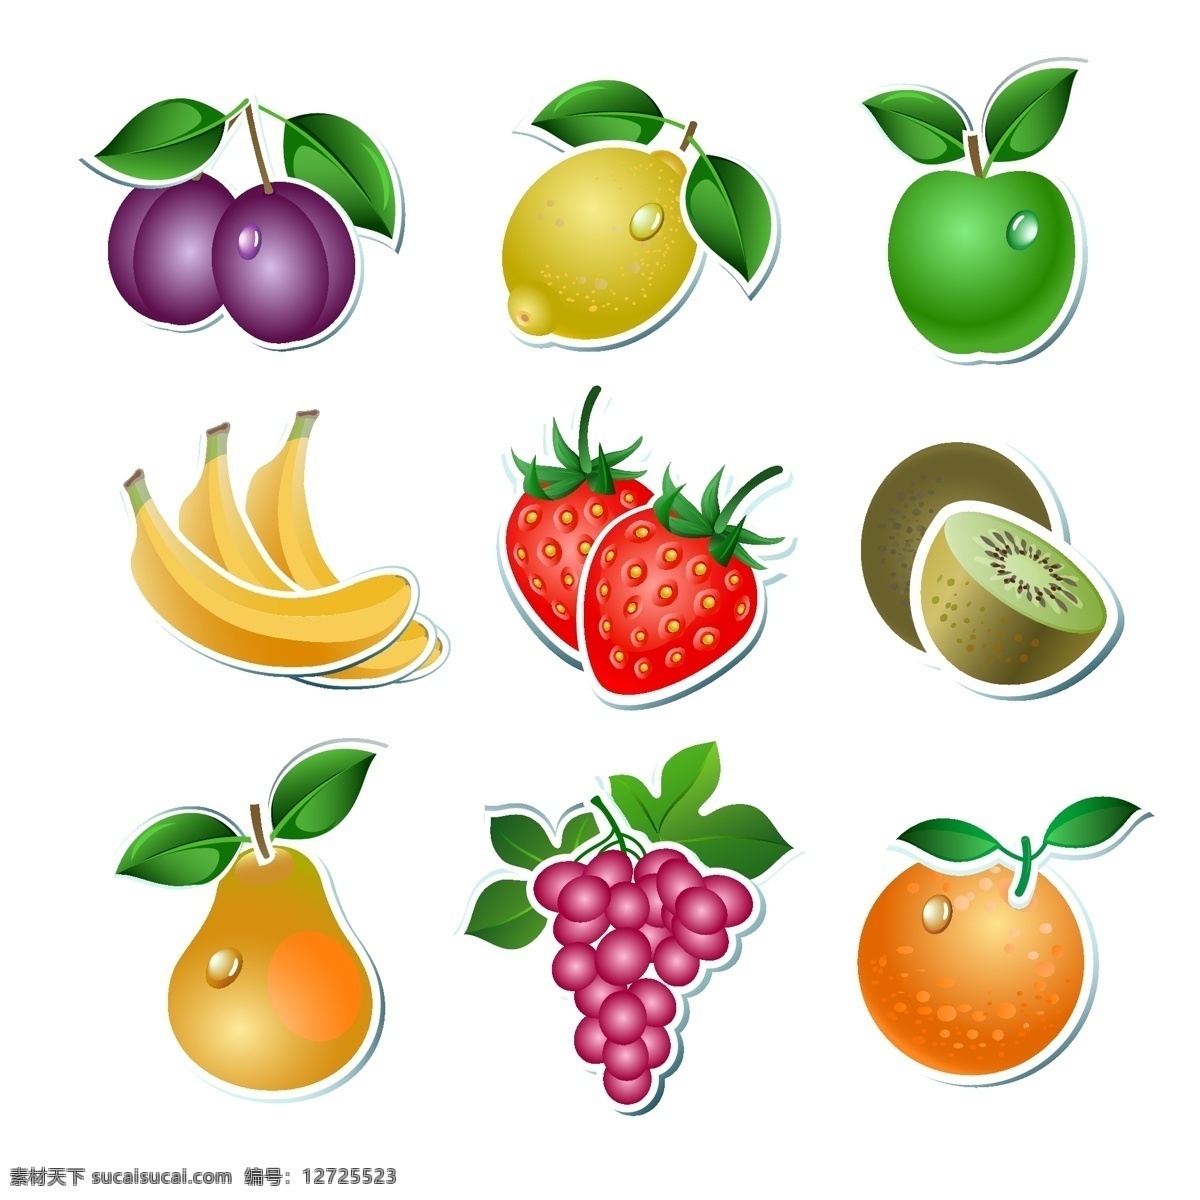 水果集合 矢量水果 卡通水果 手绘水果 水果插画 水果系列 葡萄 柠檬 奇异果 橙子 雪梨 香蕉 草莓 苹果 食物 生物世界